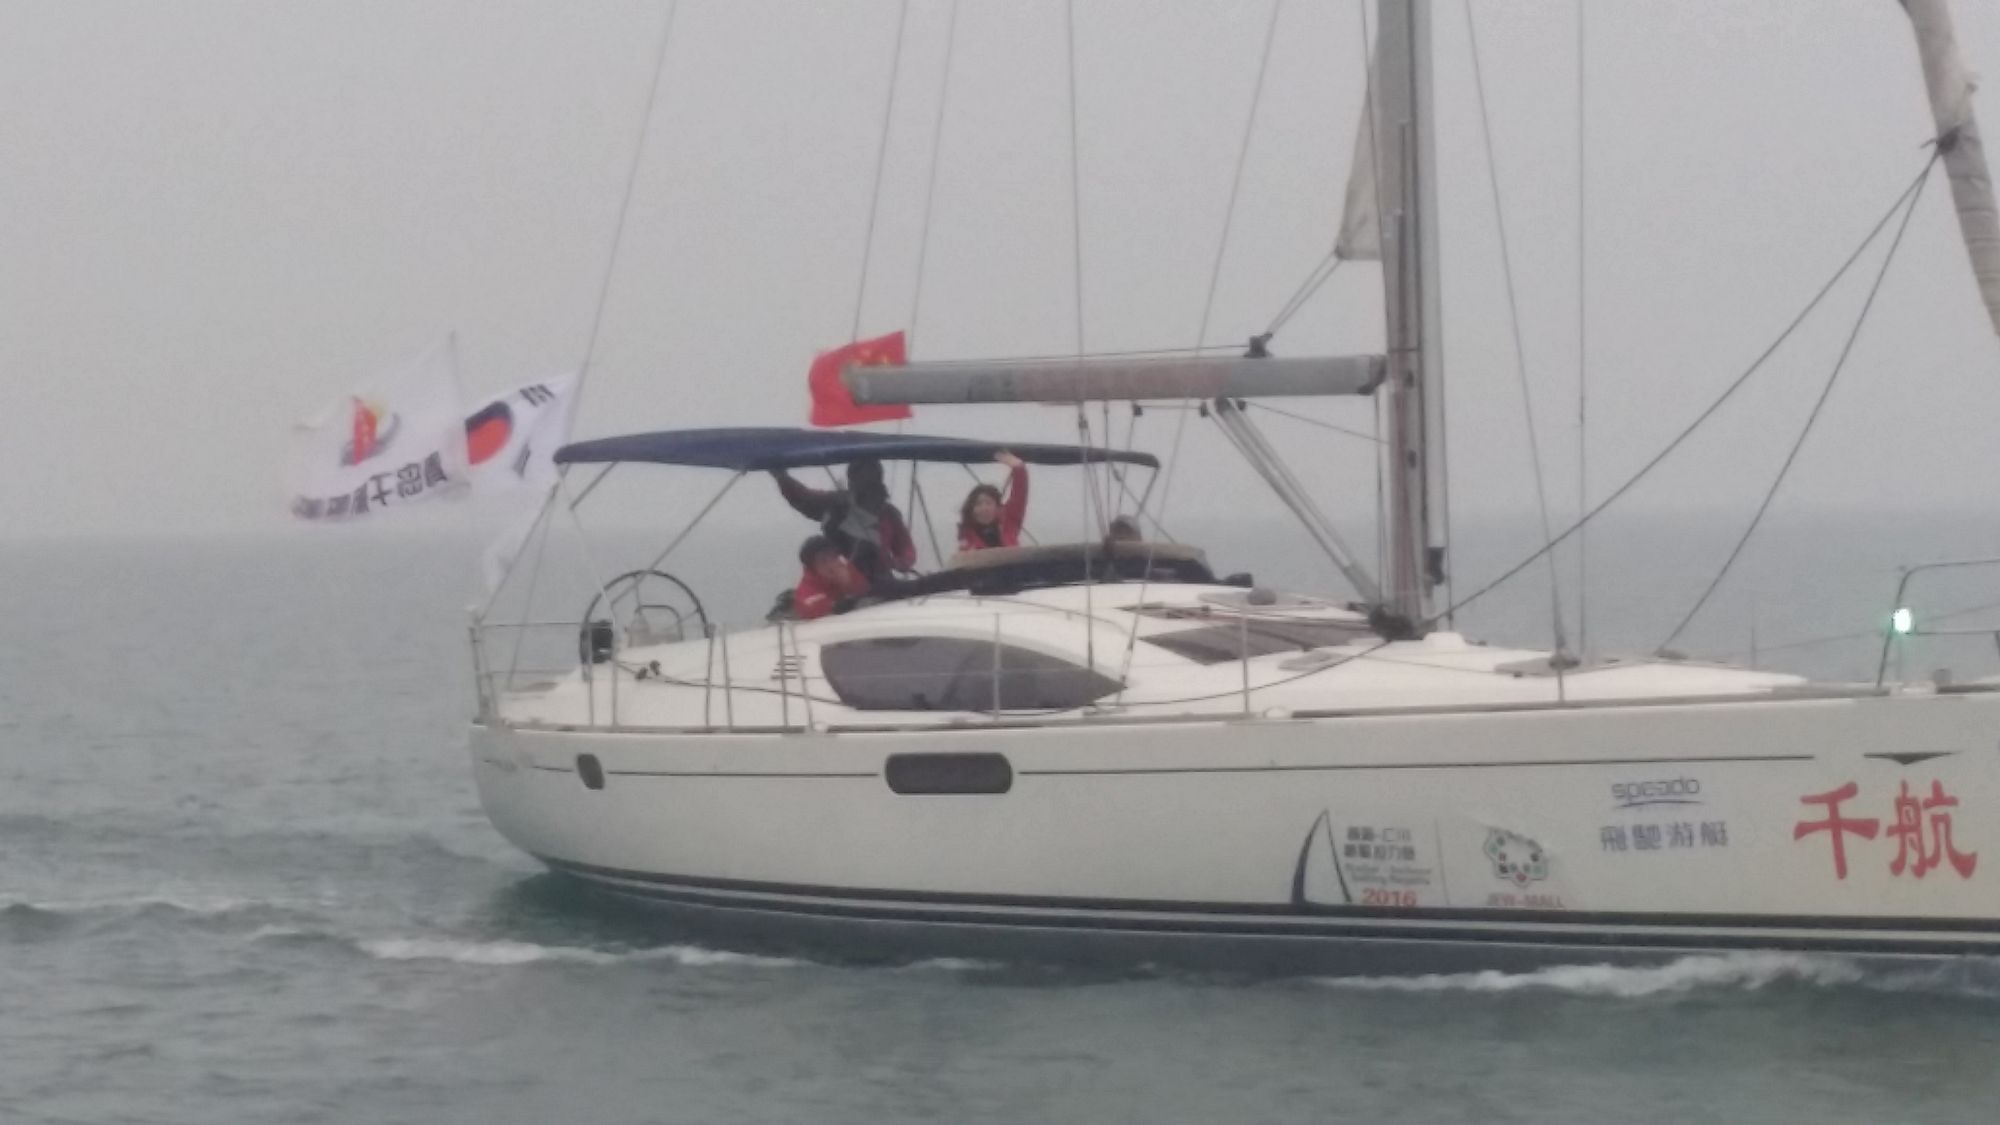 030-IMG_3378_千帆俱乐部我要航海网帆船队-2016威海-仁川国际帆船赛.JPG